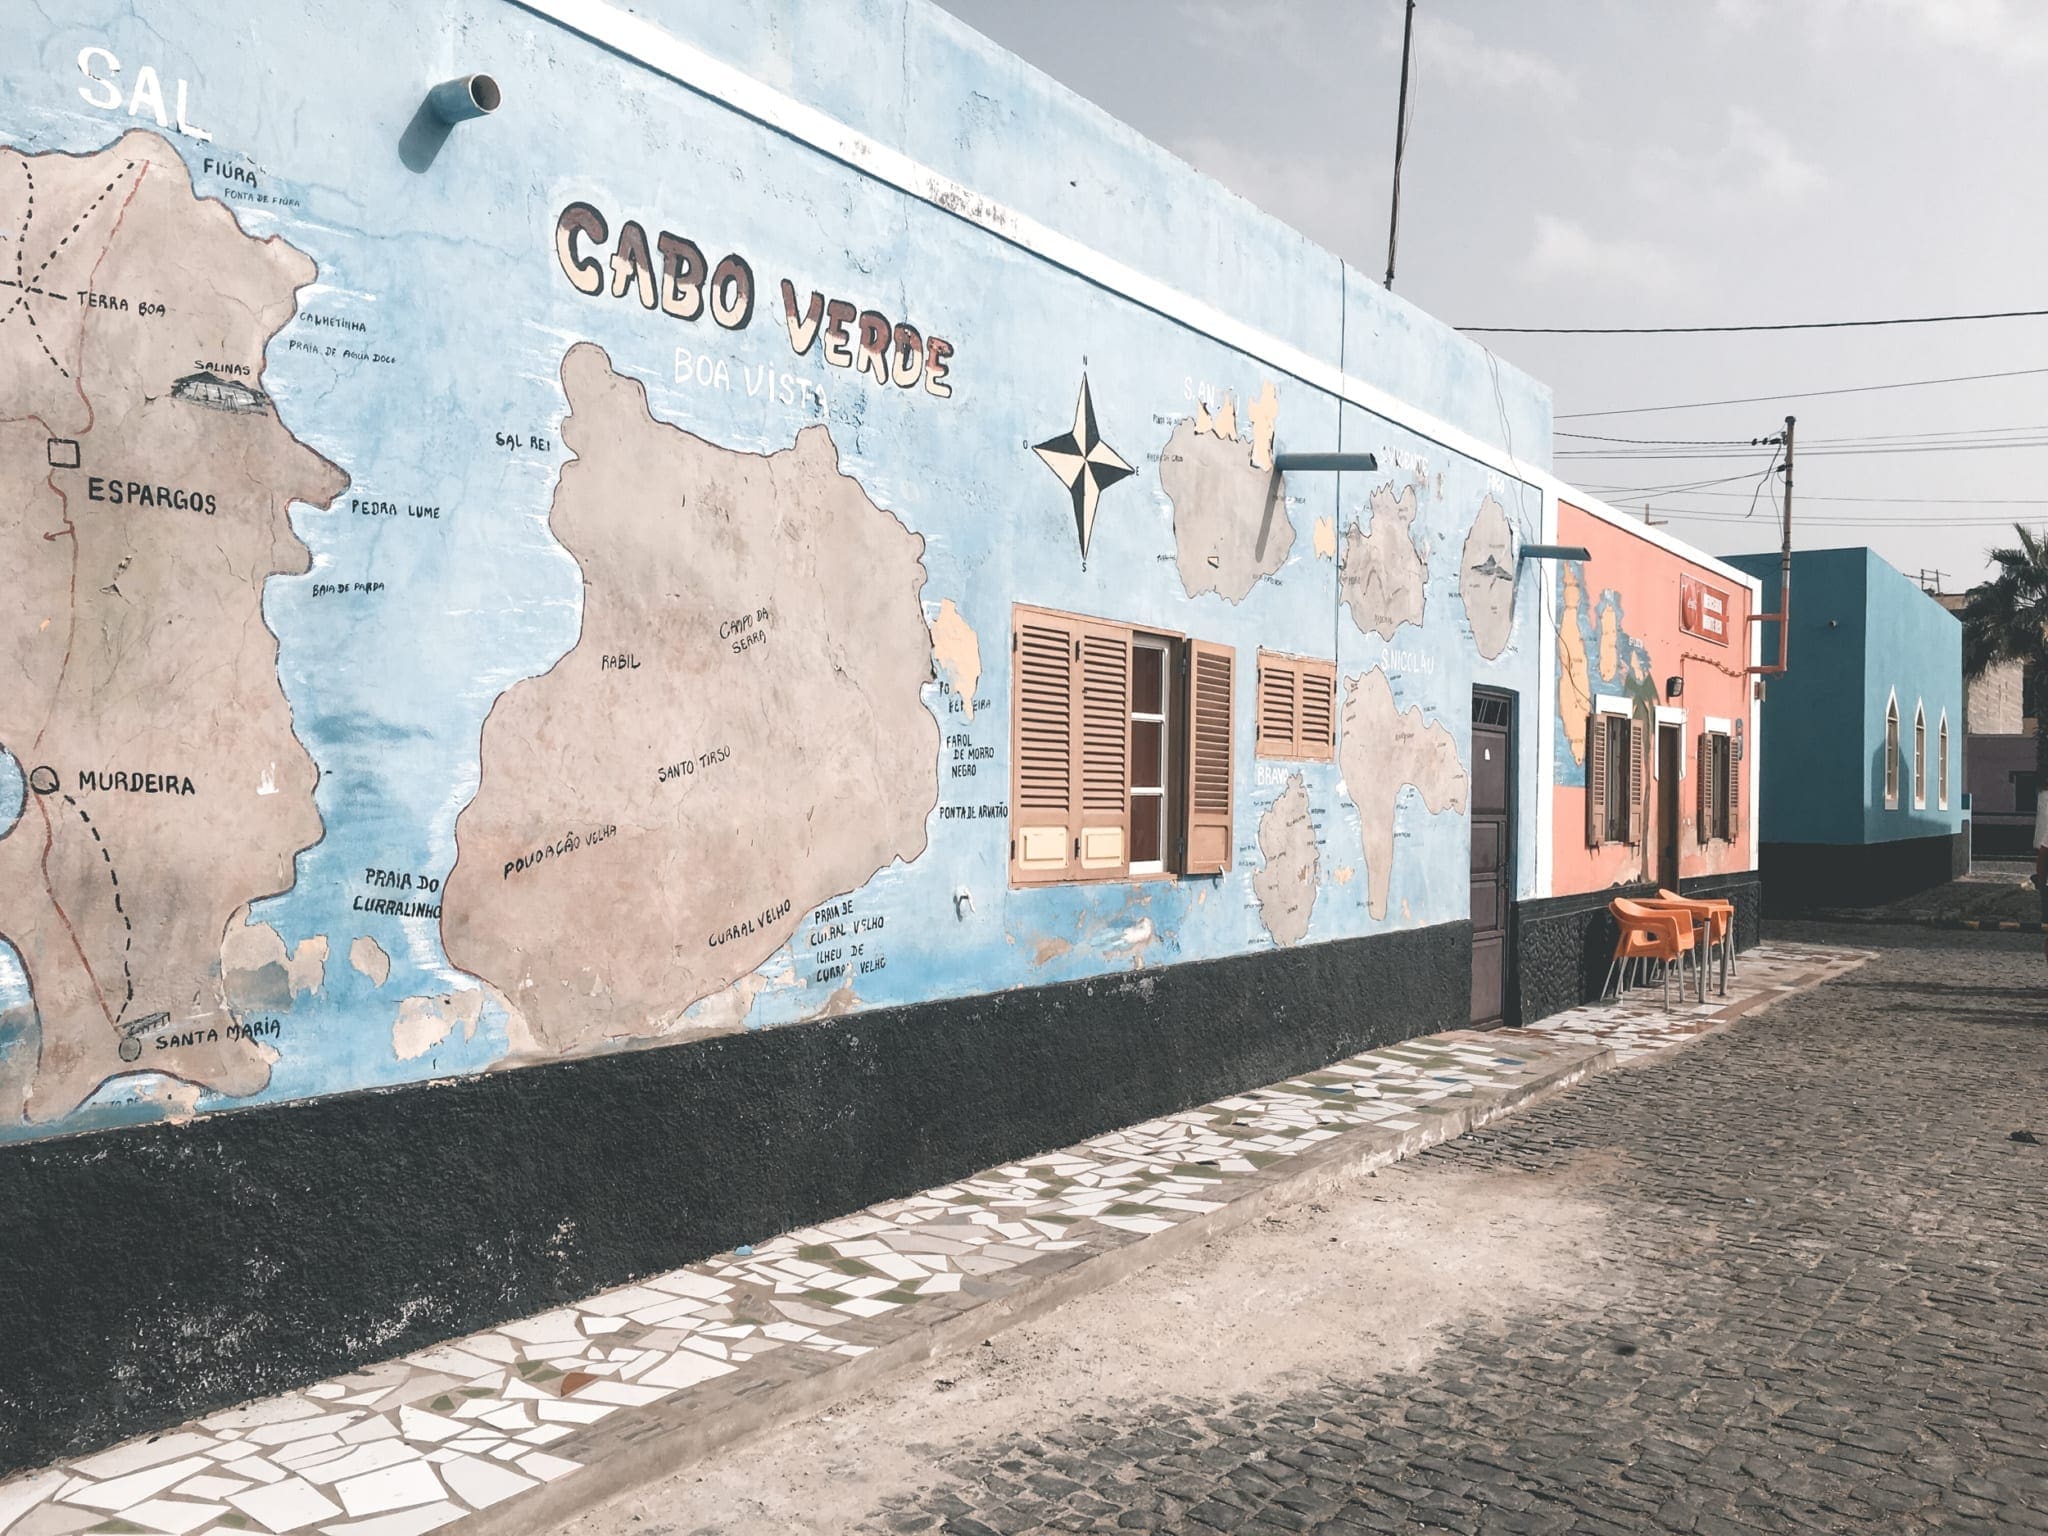 Kaapverdië, Overwinteren in Kaapverdie is het beste idee ooit